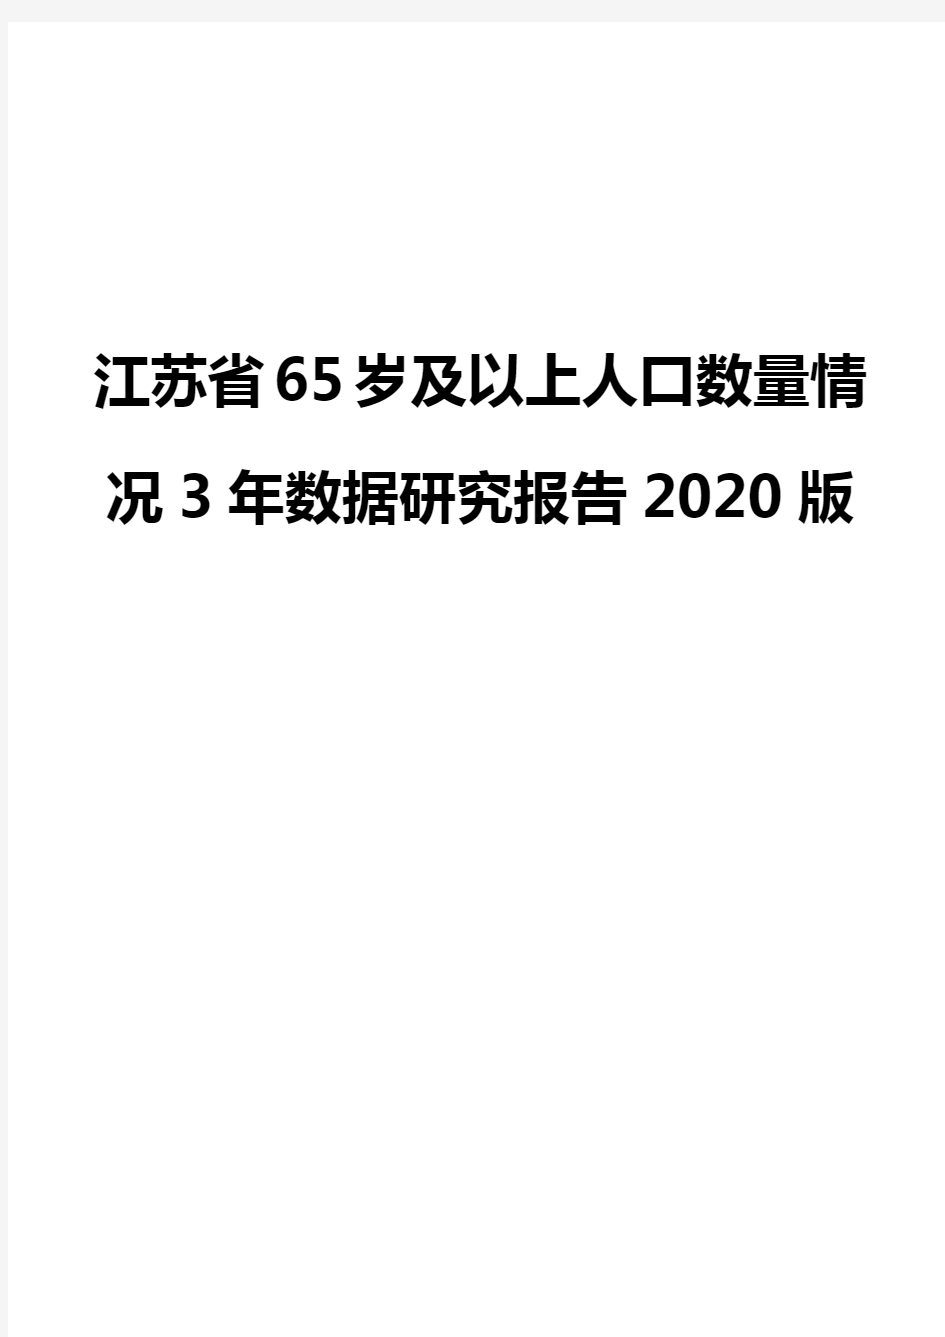 江苏省65岁及以上人口数量情况3年数据研究报告2020版